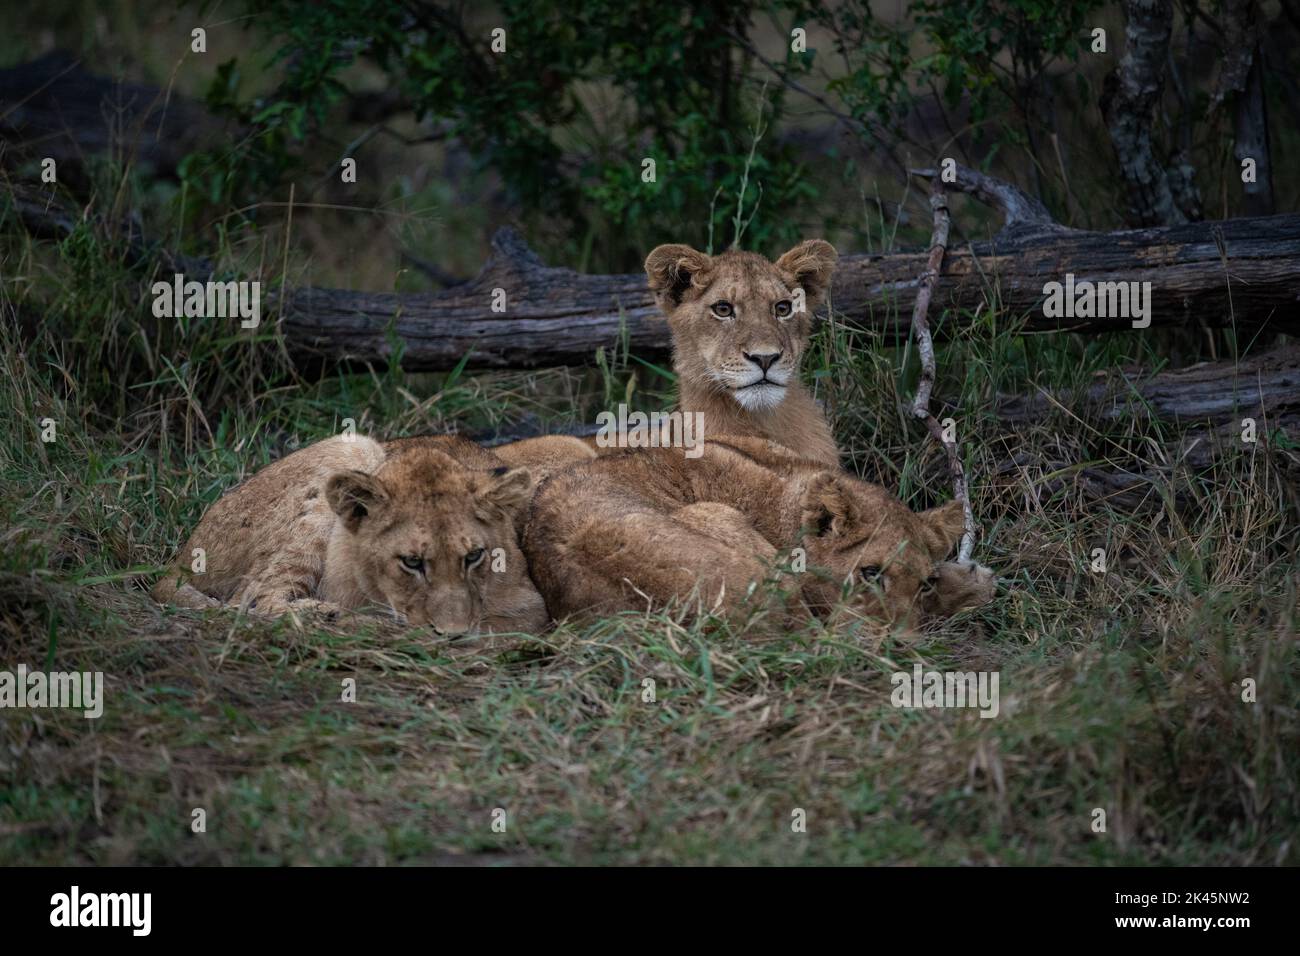 Trois oursons de lion, Panthera leo, se trouvent ensemble dans l'herbe, regard direct Banque D'Images